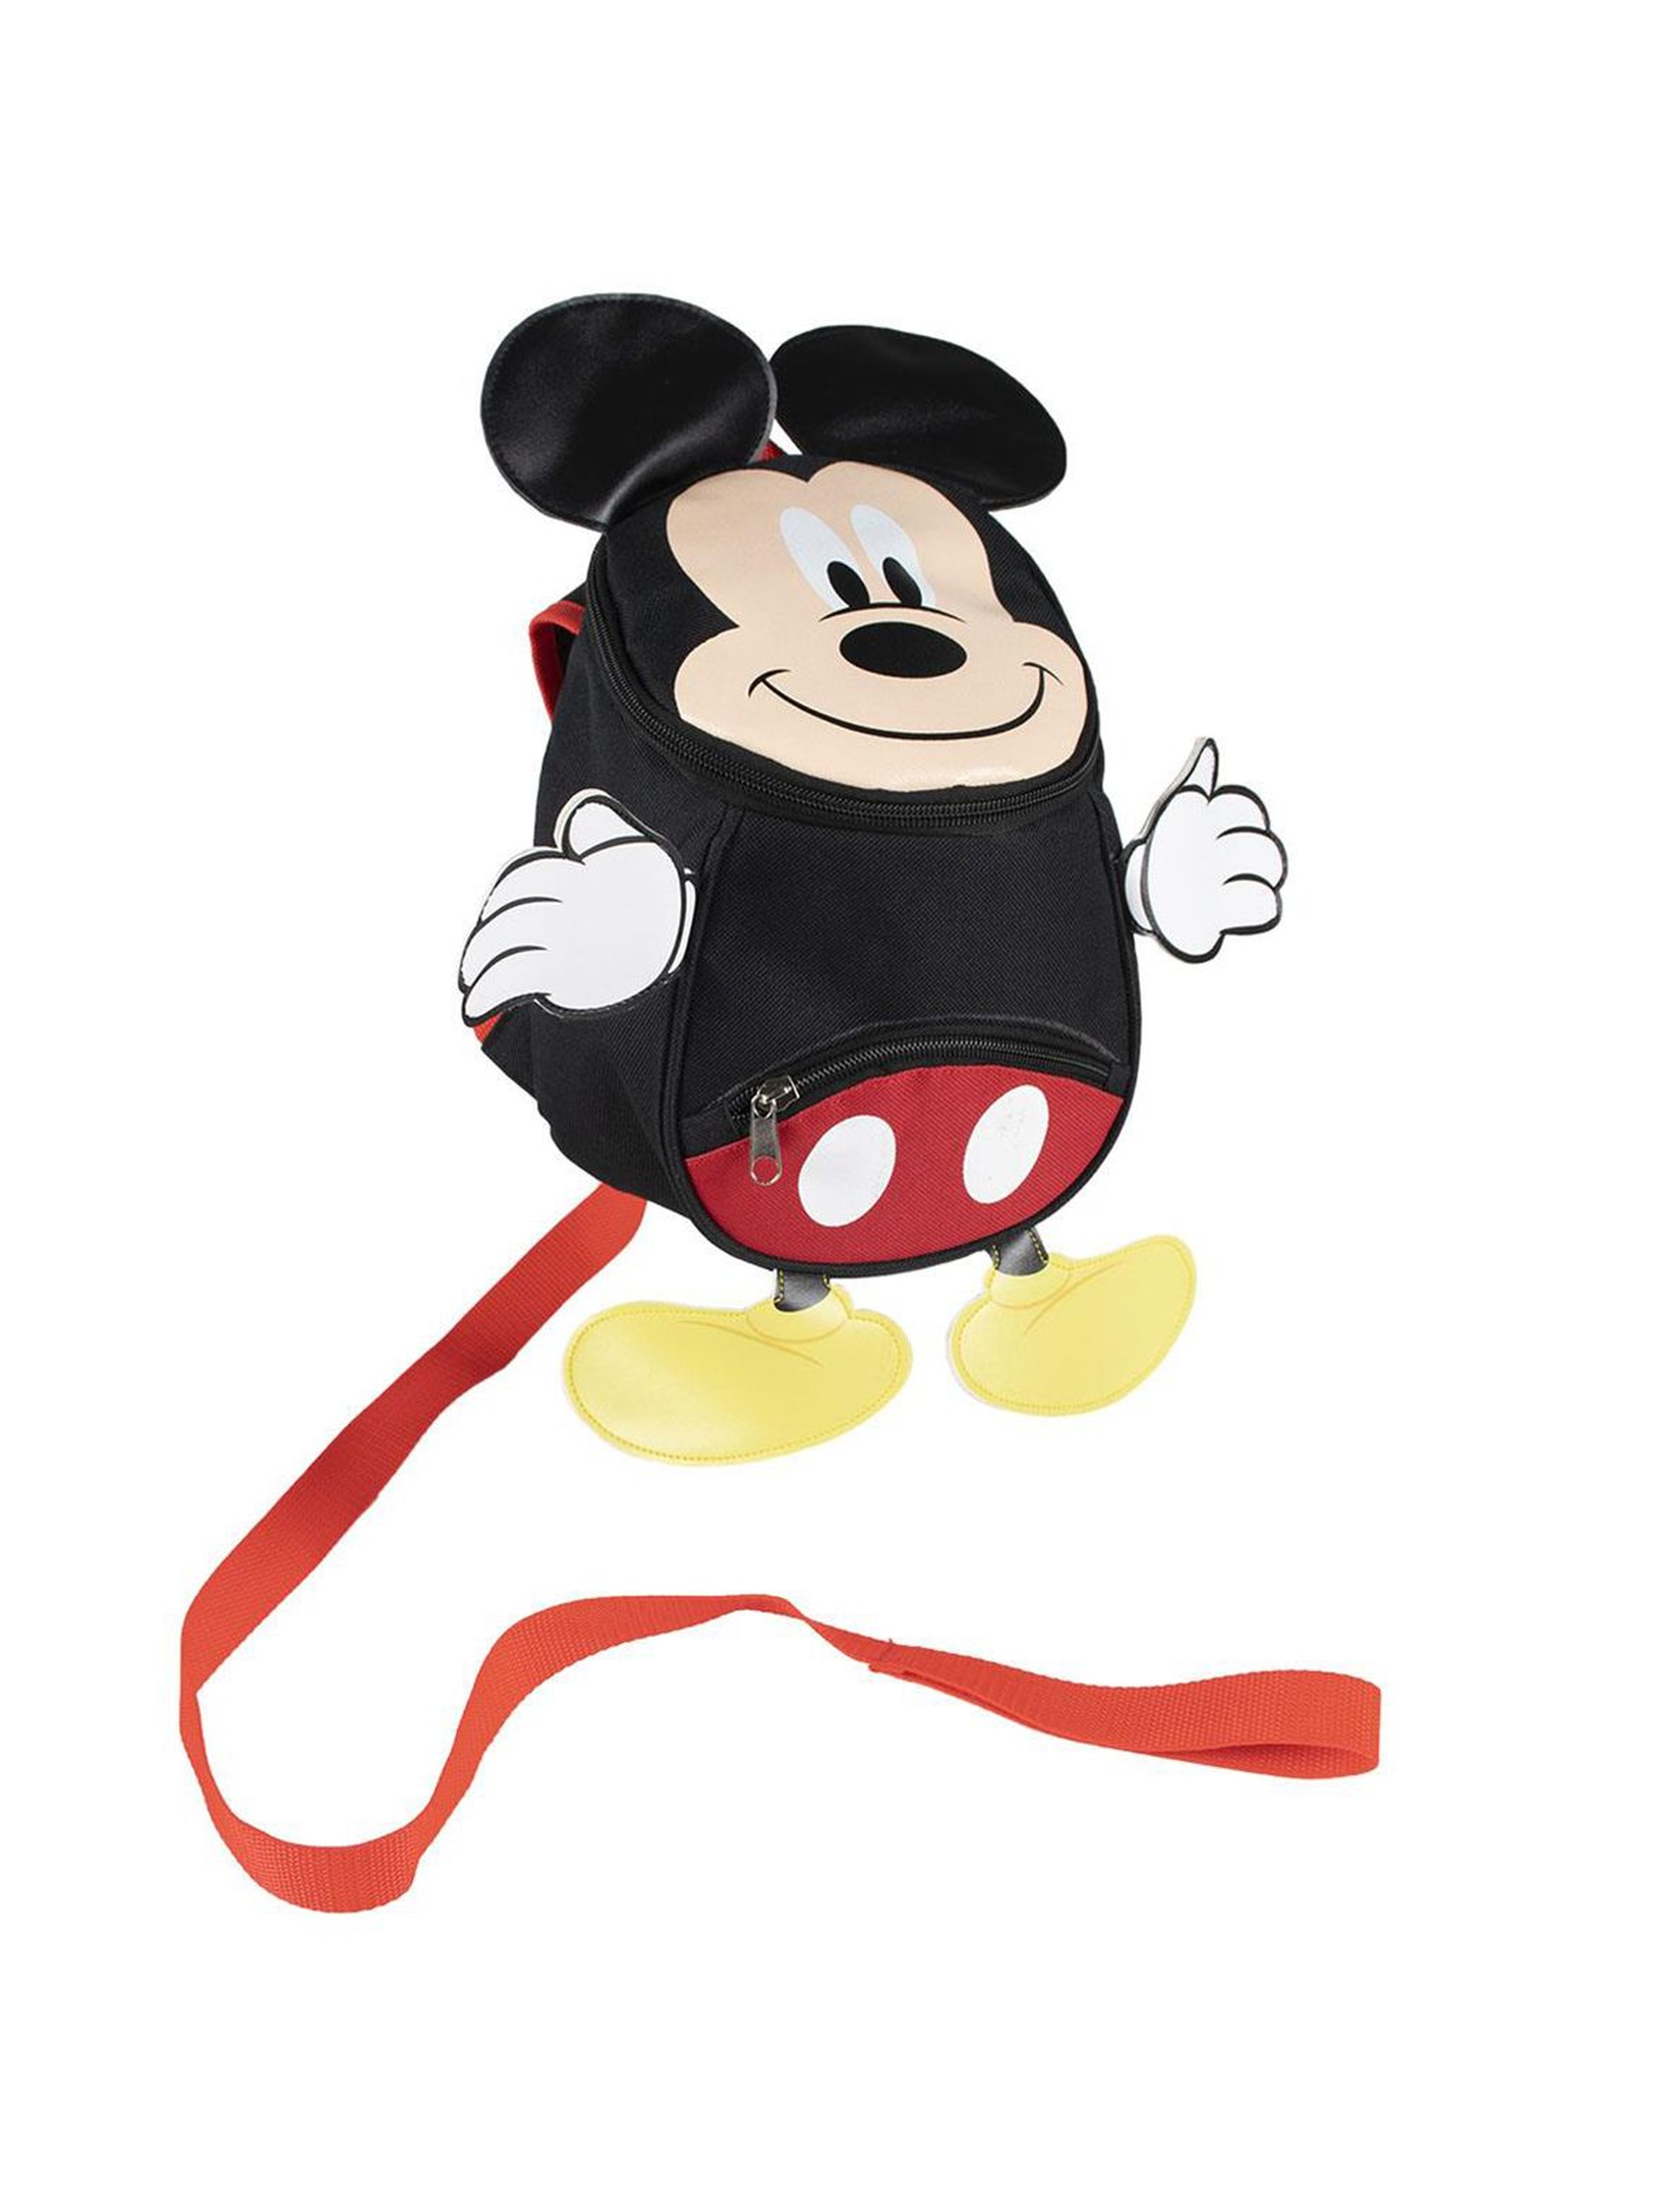 Plecak dziecięcy przedszkolny z paskiem do kontroli rodzicielskiej Myszka Miki - czarny